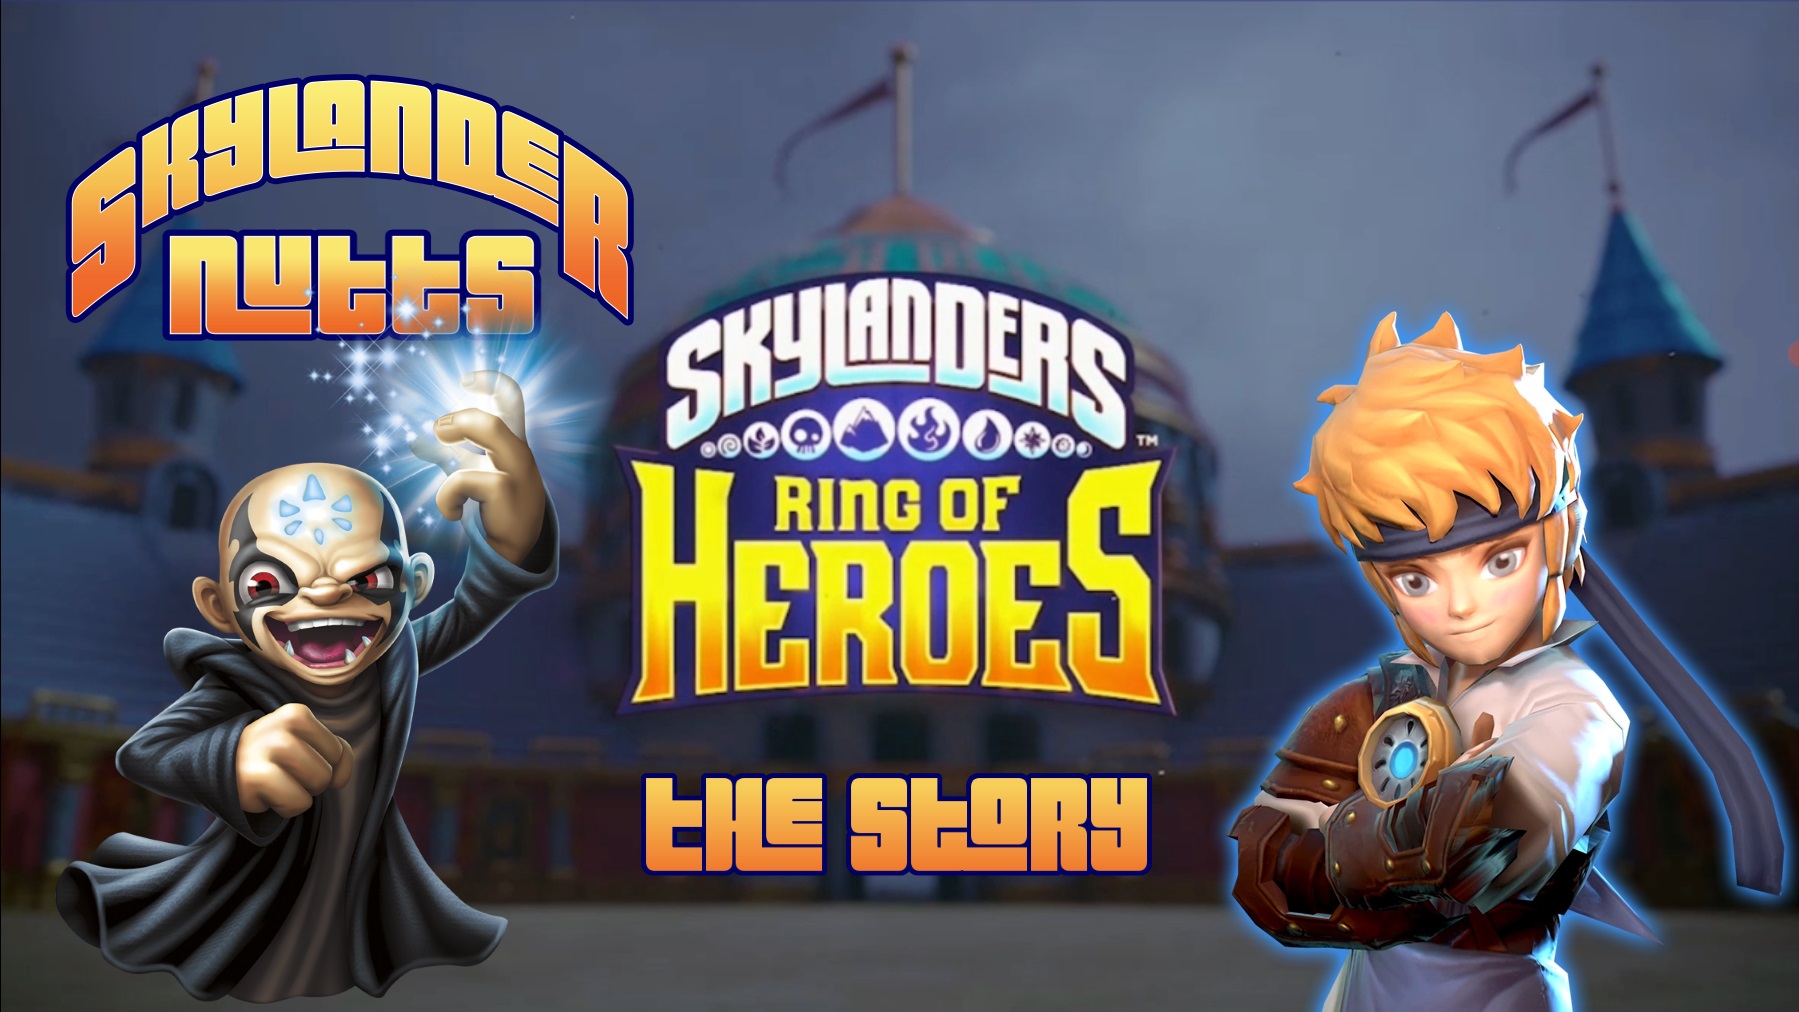 Skylanders Ring of Heroes Revamp - The Story